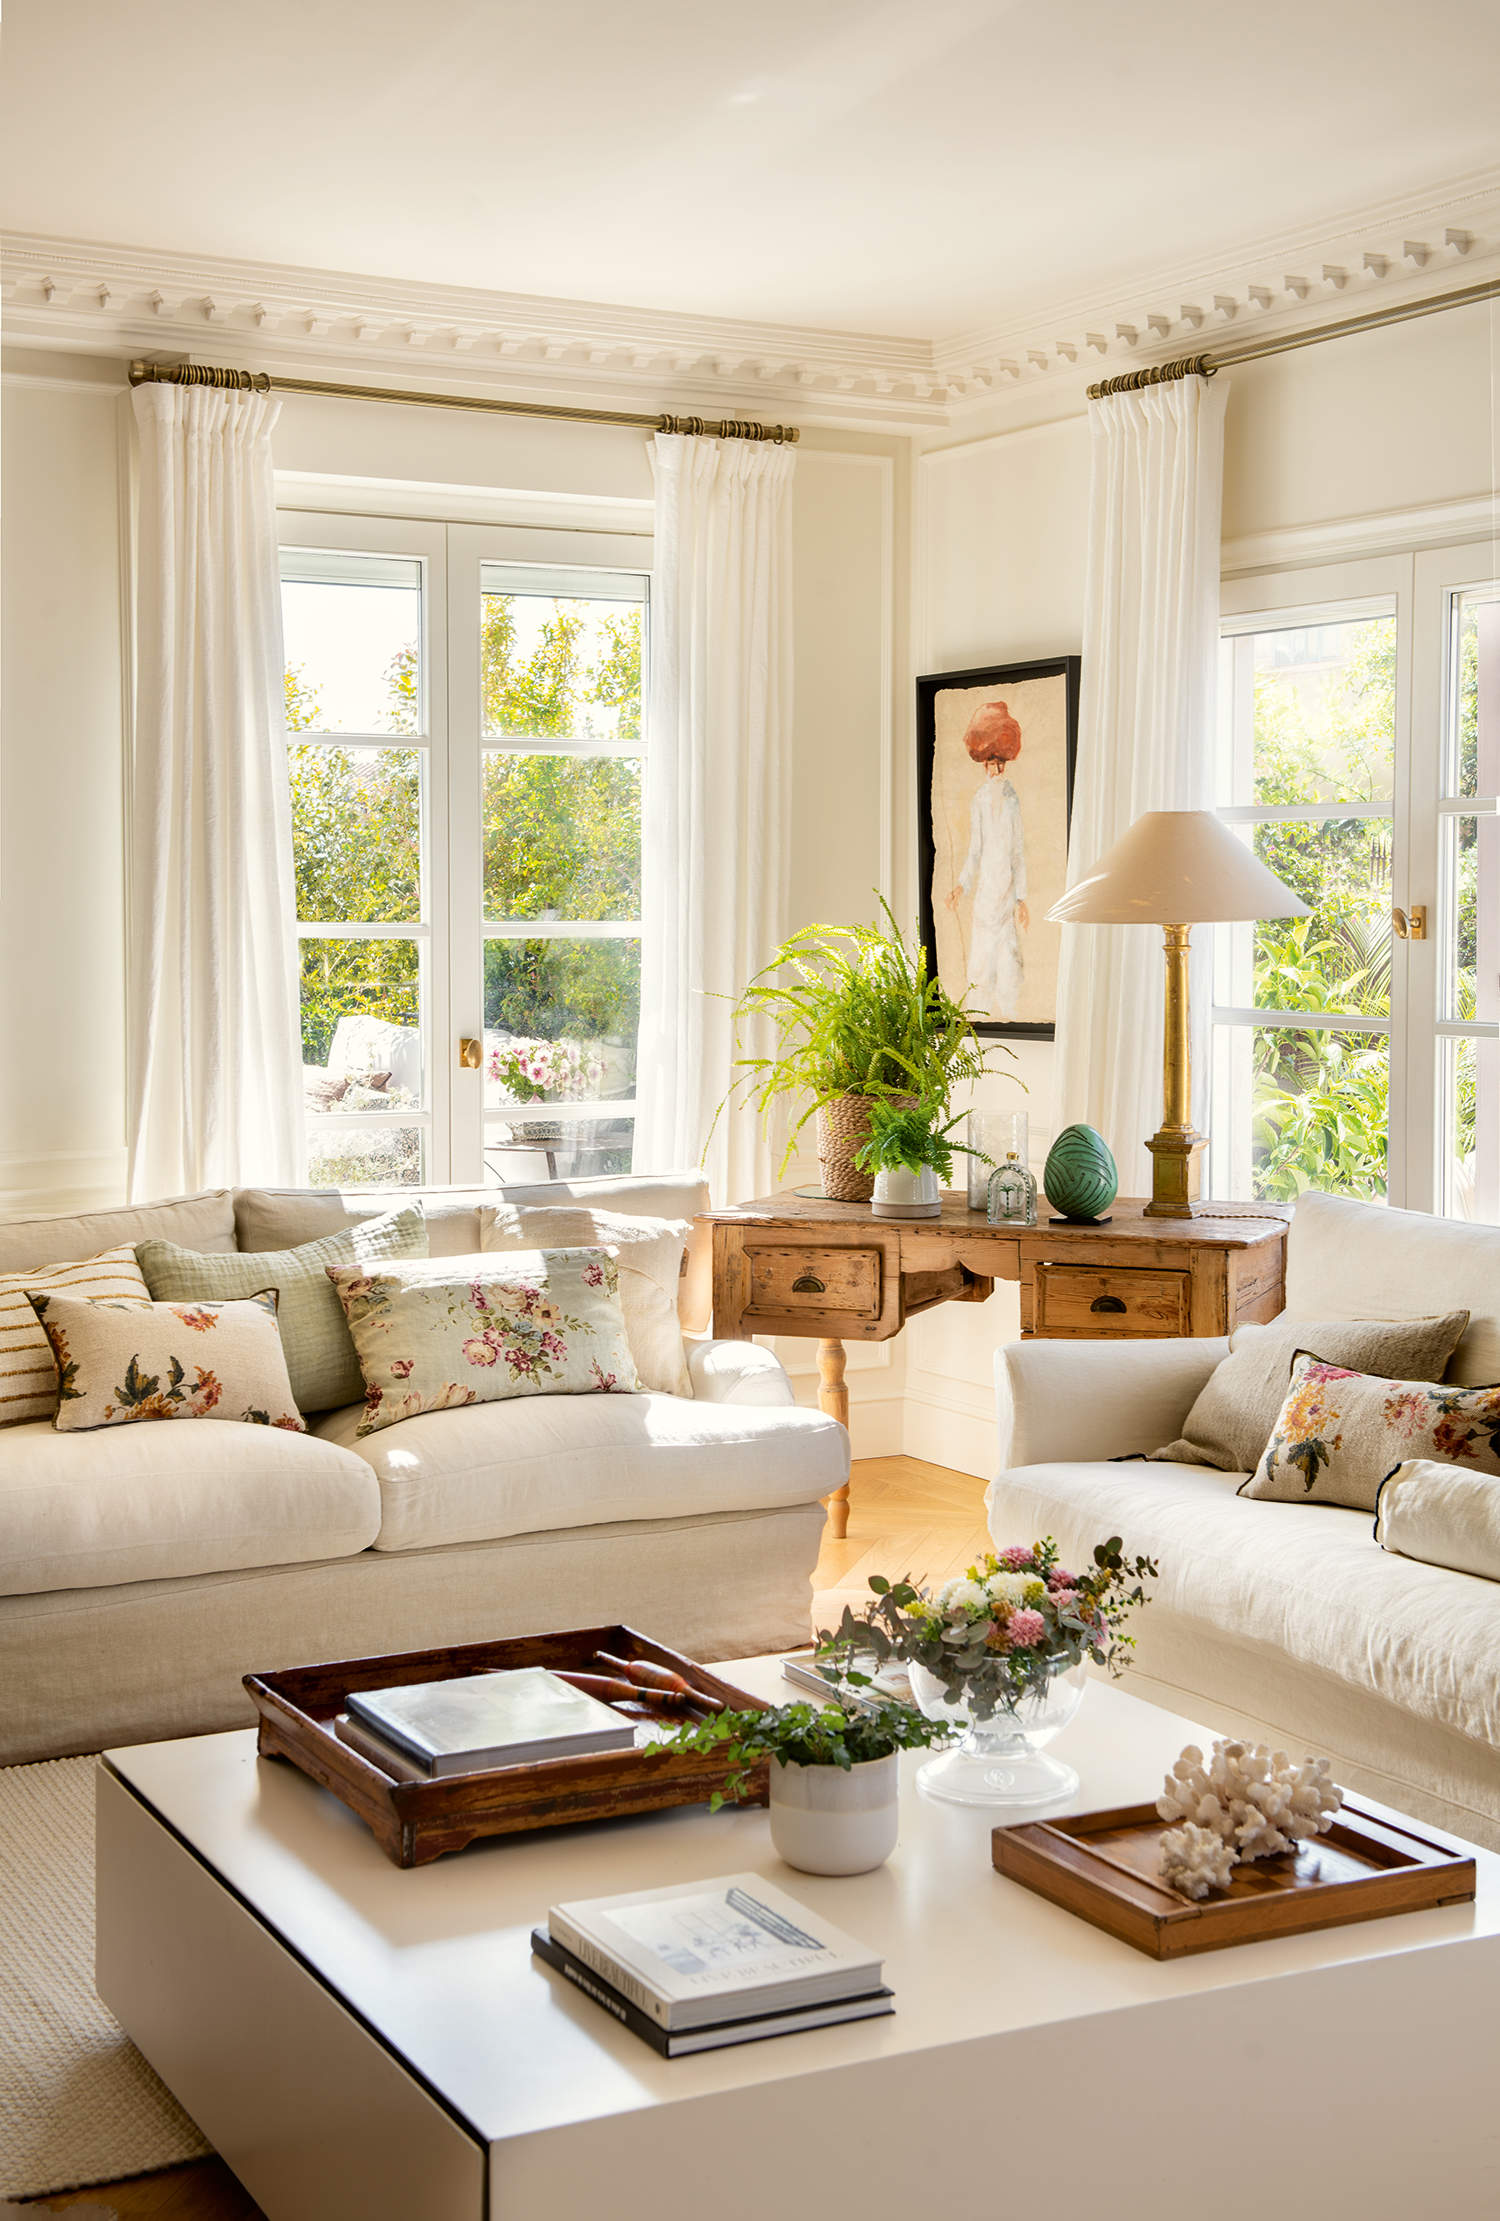 Salón elegante y luminoso con sofás blancos, mesa de centro blanca, cortinas